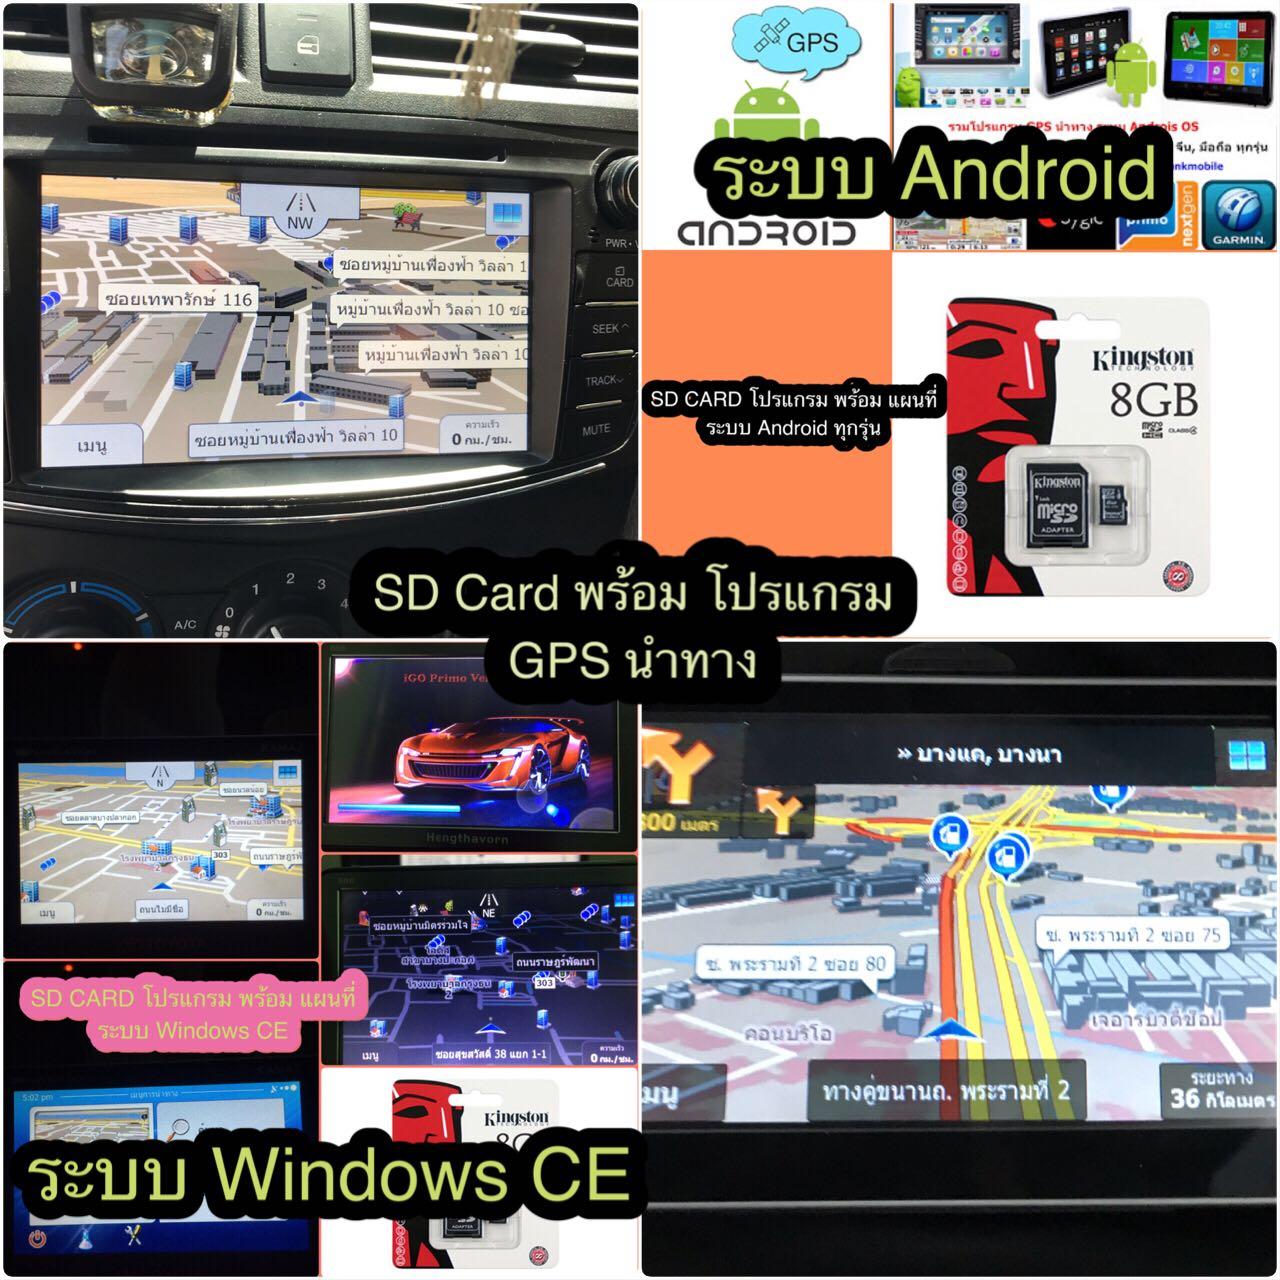 รวมโปรแกรมนำทางGPS Navigator(3D)บนรถยนต์(Windows CE 4.2,5,6-PNA,GPS จีน)+IGO Primo-Amigo/Garmin XT/NDrive/Sygic/Powermap/Papago/MIO MAP/แผนที่-เมนูและพูดนำทางเป็นภาษาไทย/แผนที่ไทยทุกจังหวัด/พร้อมPOI สถานที่ต่างๆใน กทม/โปรแกรมKeyboard ค้นหาเส้นทางต่างๆ รูปที่ 1